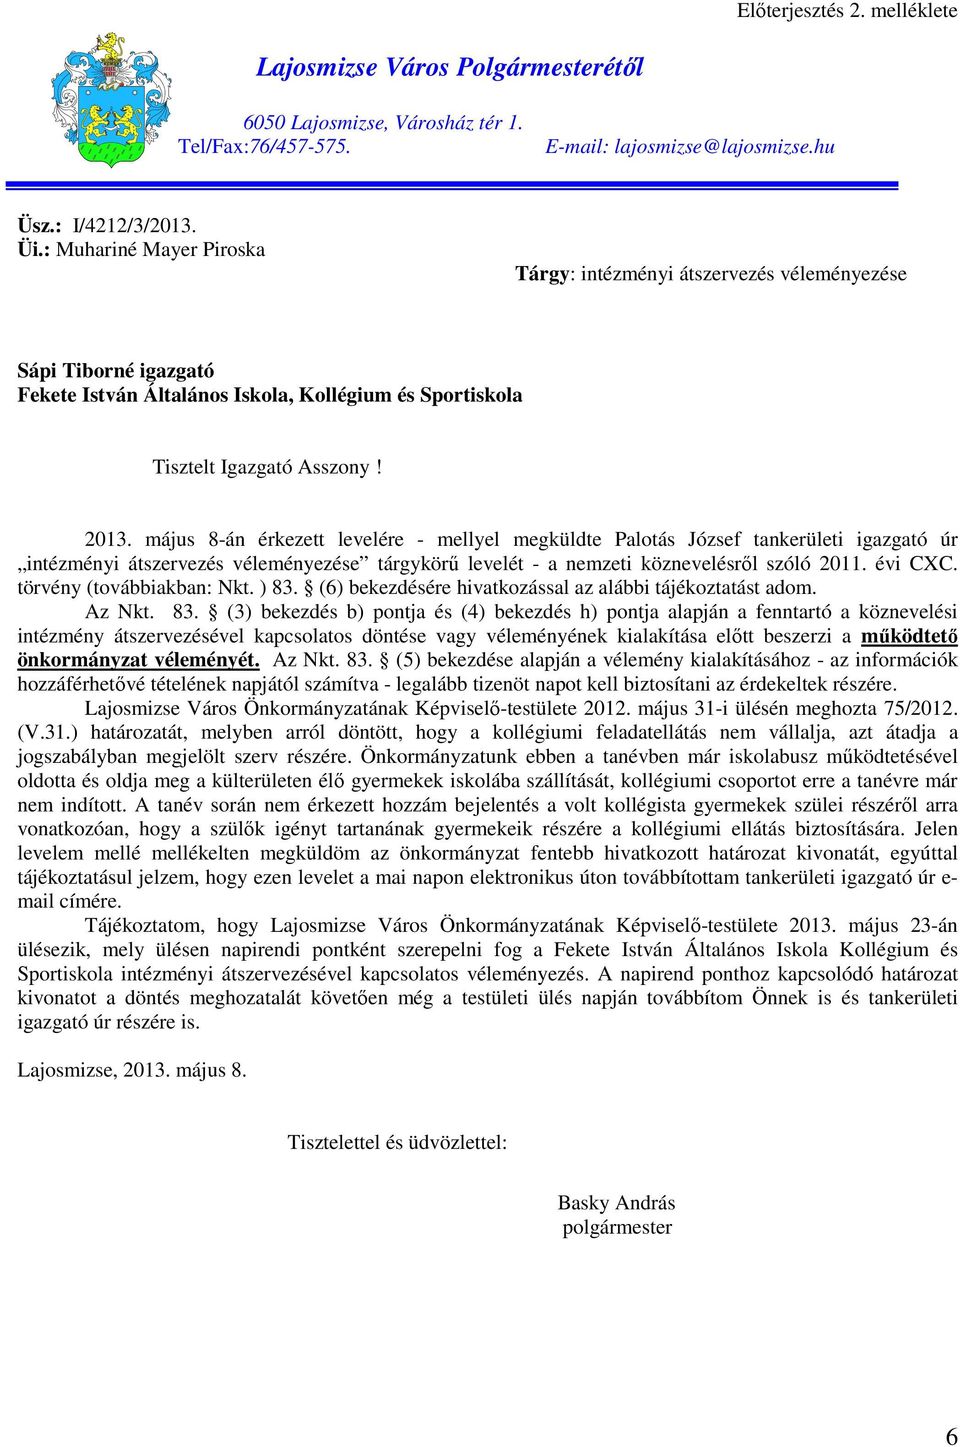 május 8-án érkezett levelére - mellyel megküldte Palotás József tankerületi igazgató úr intézményi átszervezés véleményezése tárgykörő levelét - a nemzeti köznevelésrıl szóló 2011. évi CXC.